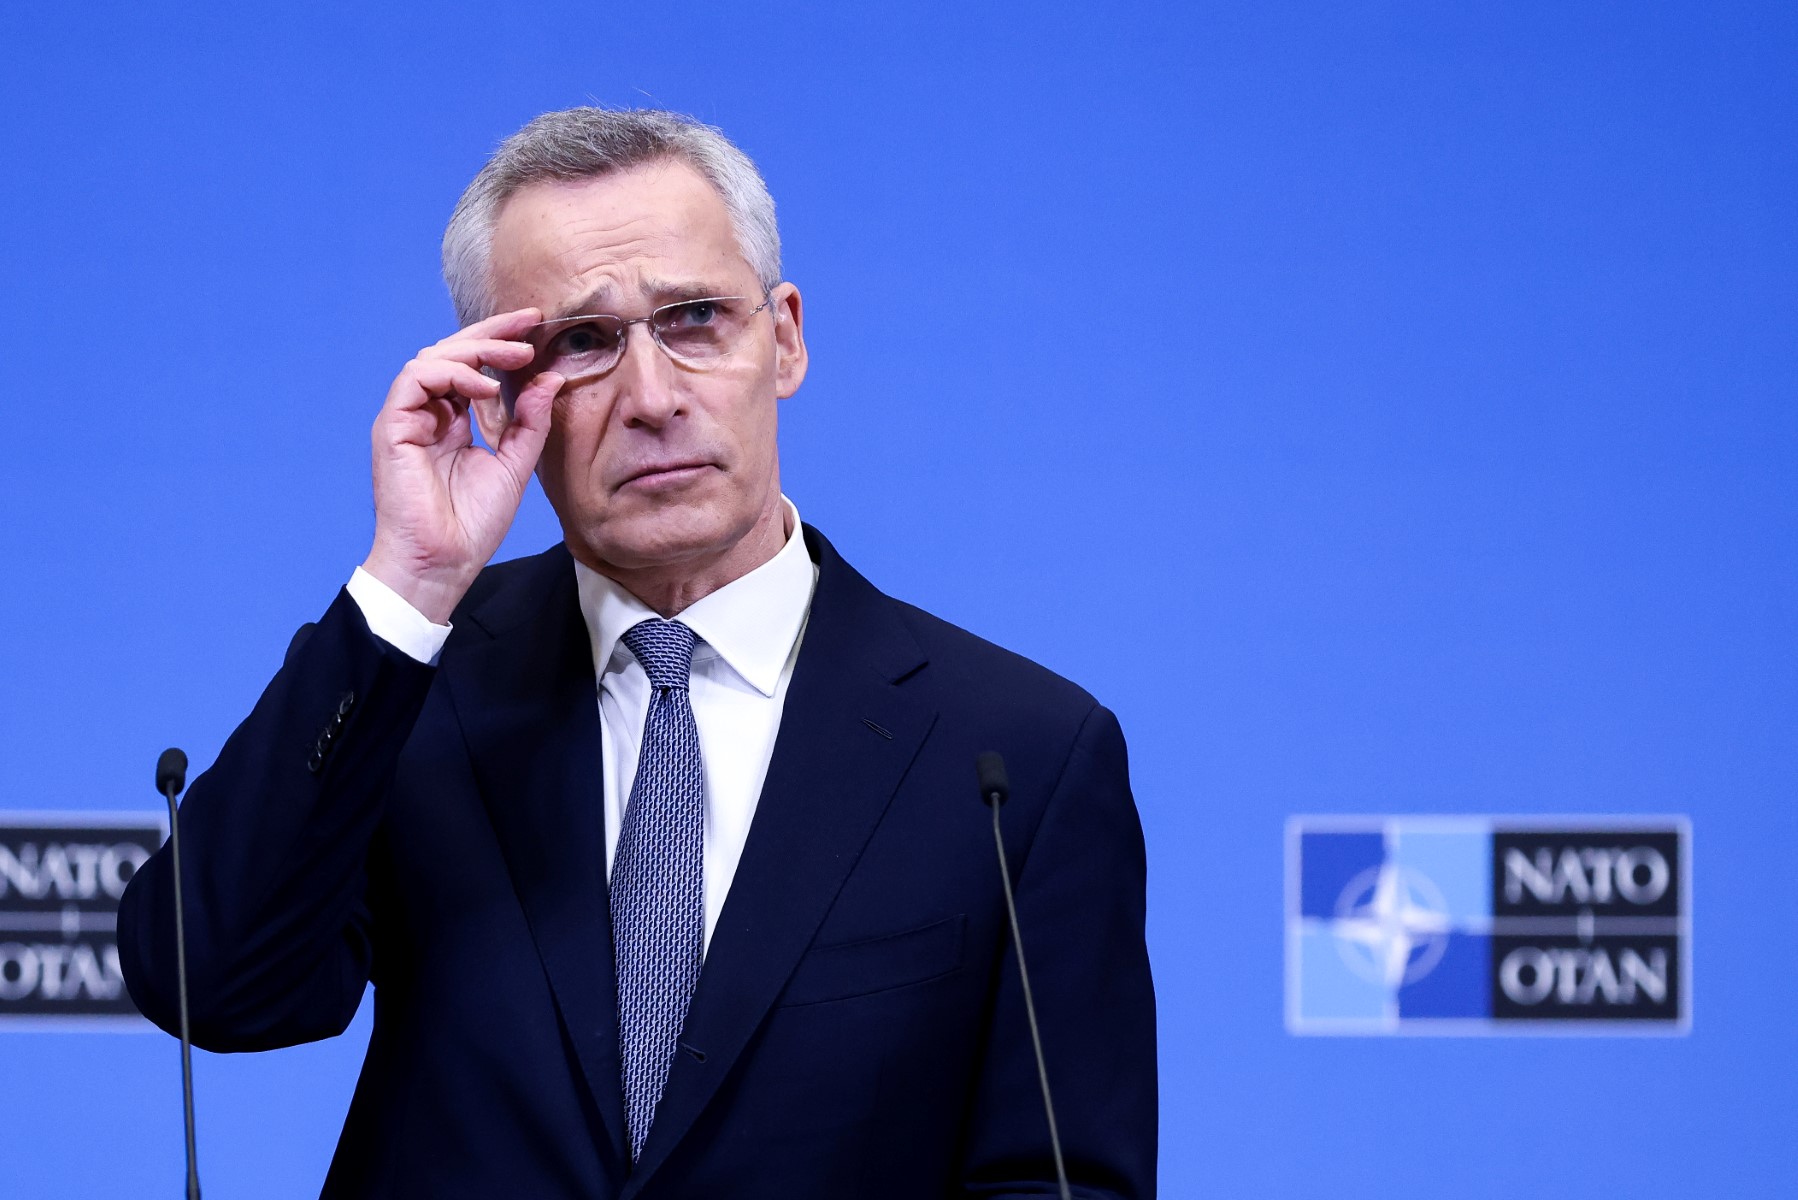 El jefe de la OTAN planea dejar el cargo en octubre